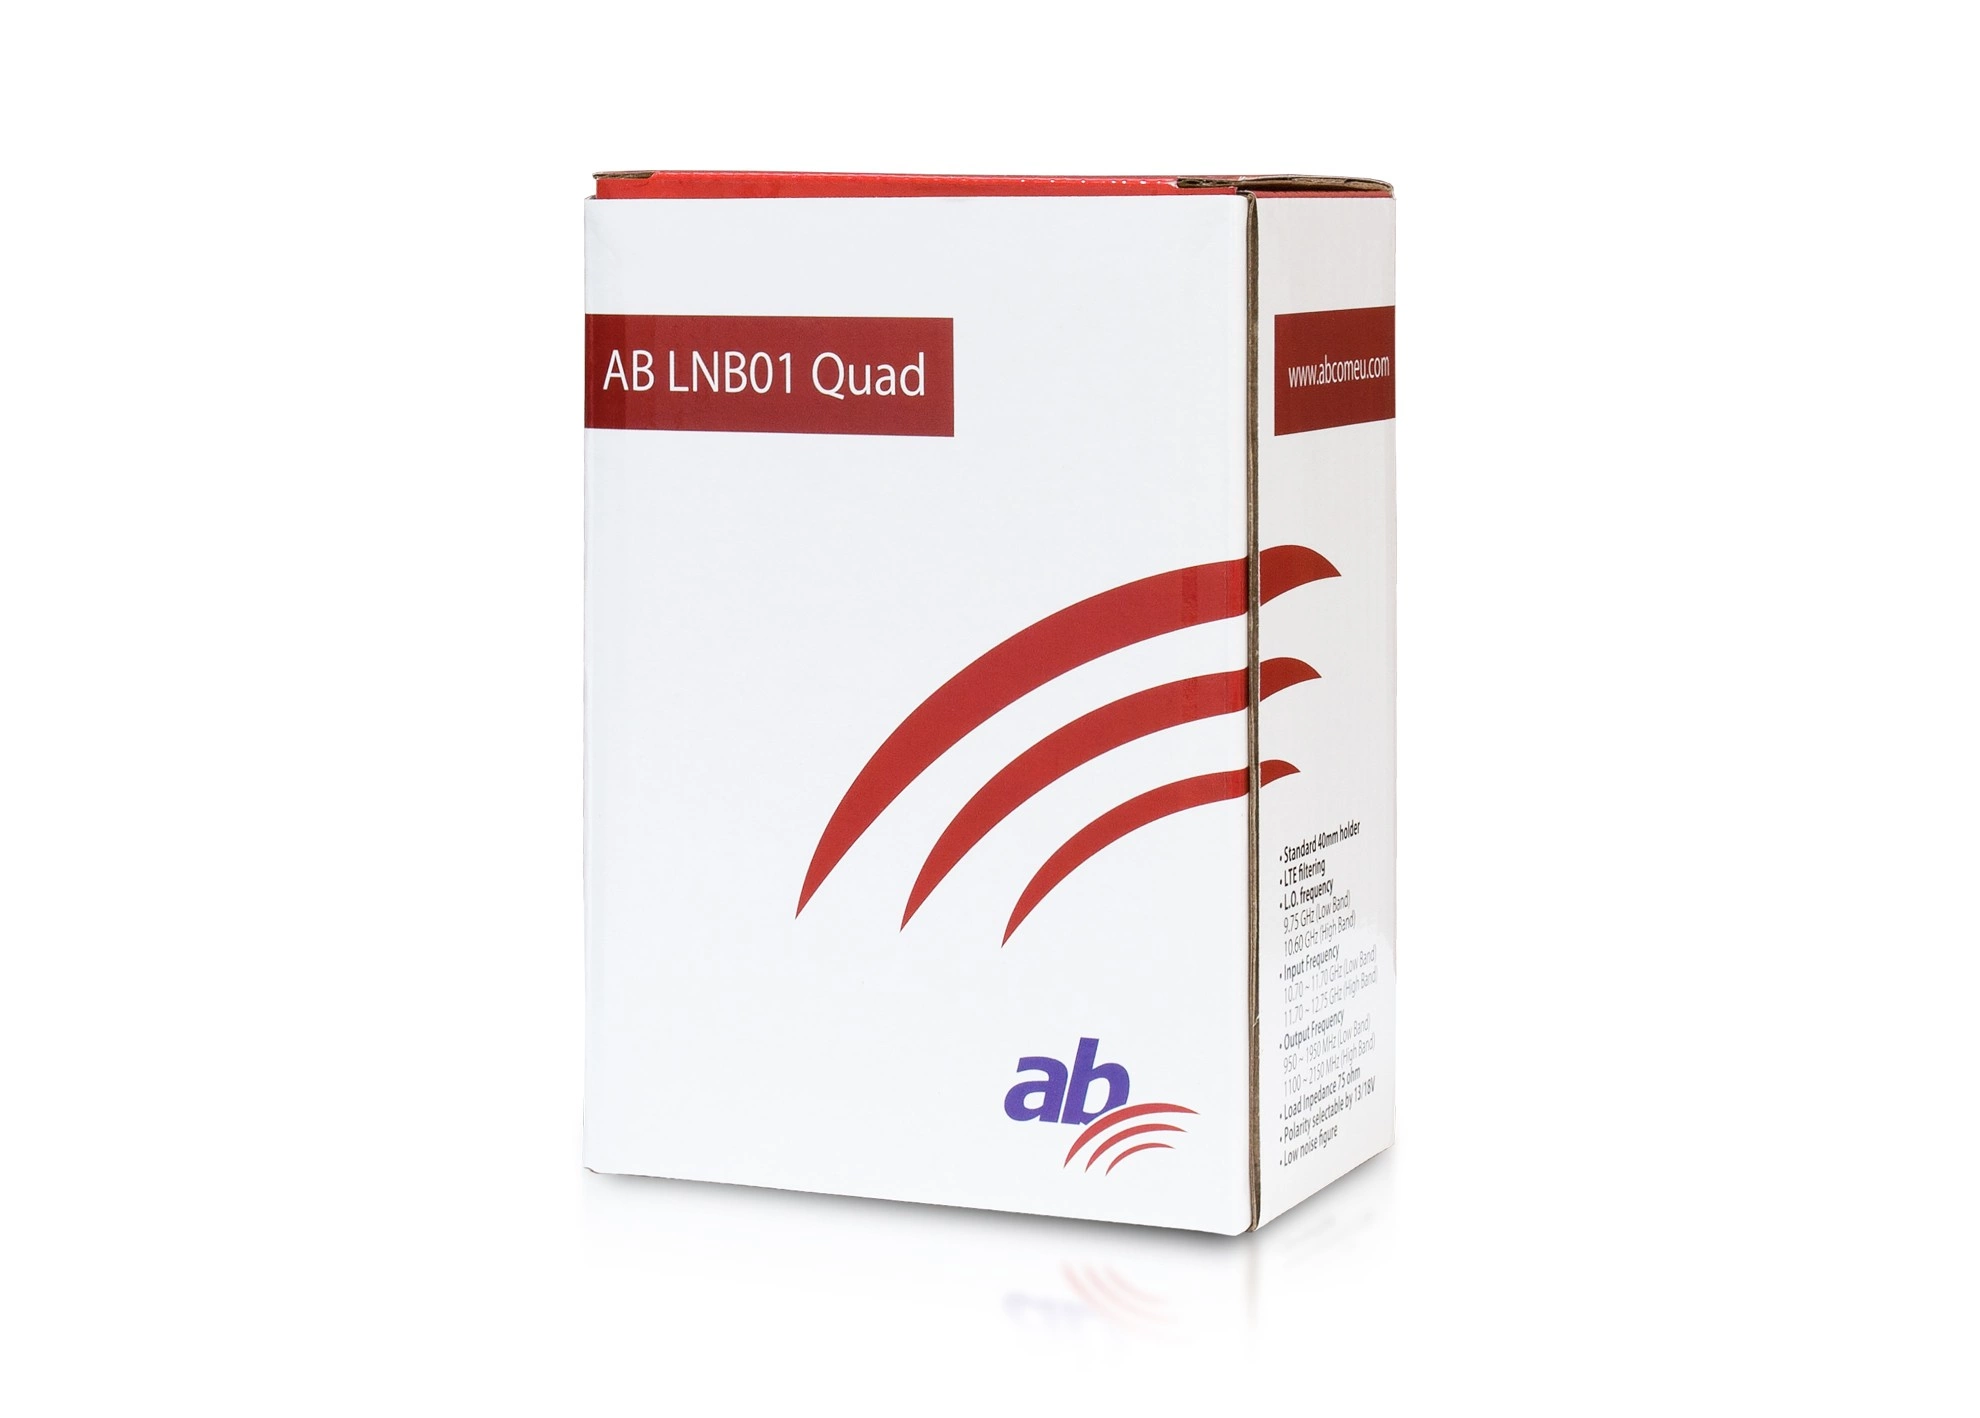 AB LNB01 Quad Red Edition